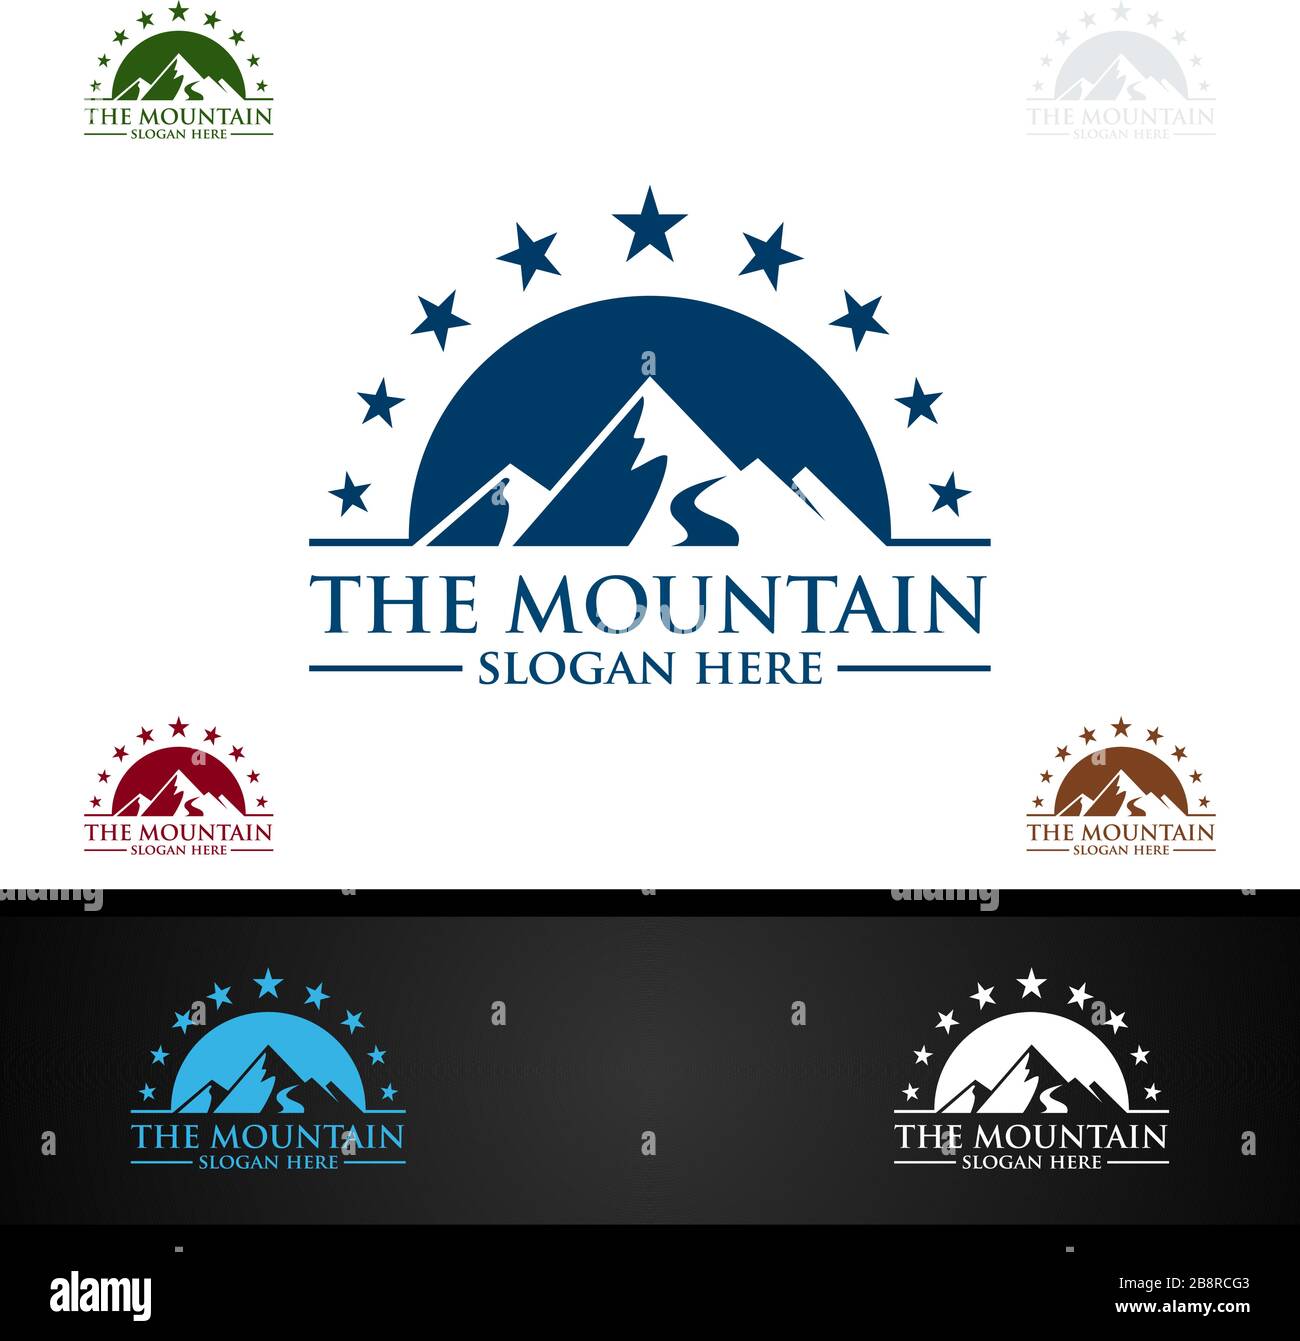 Conception de logo vectoriel de montagne, concept pour les sports naturels, l'expédition ou la photographie Illustration de Vecteur